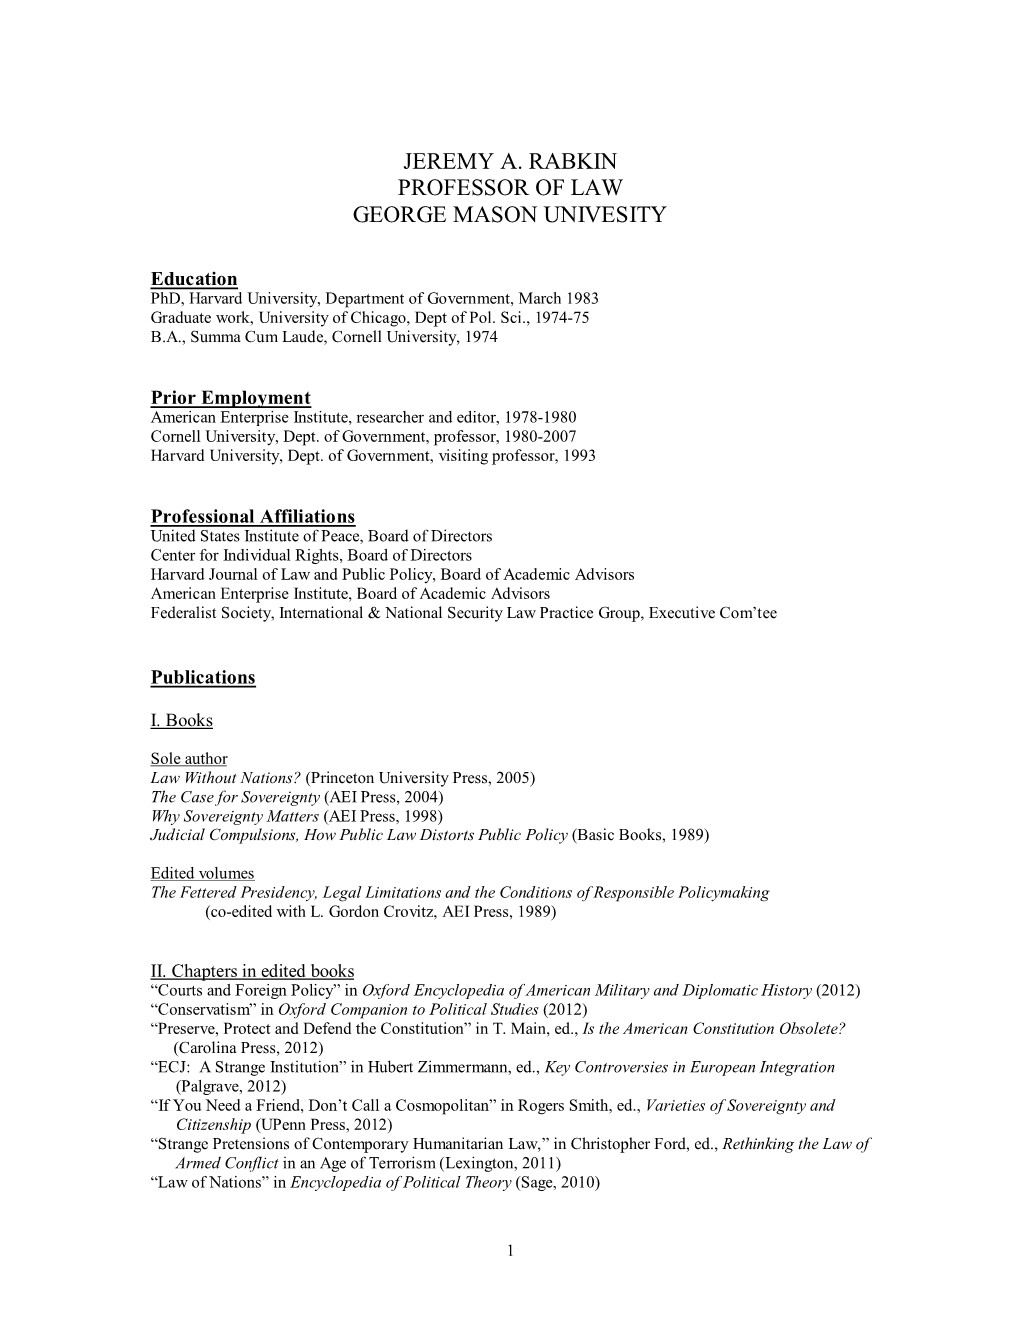 CV in PDF Format